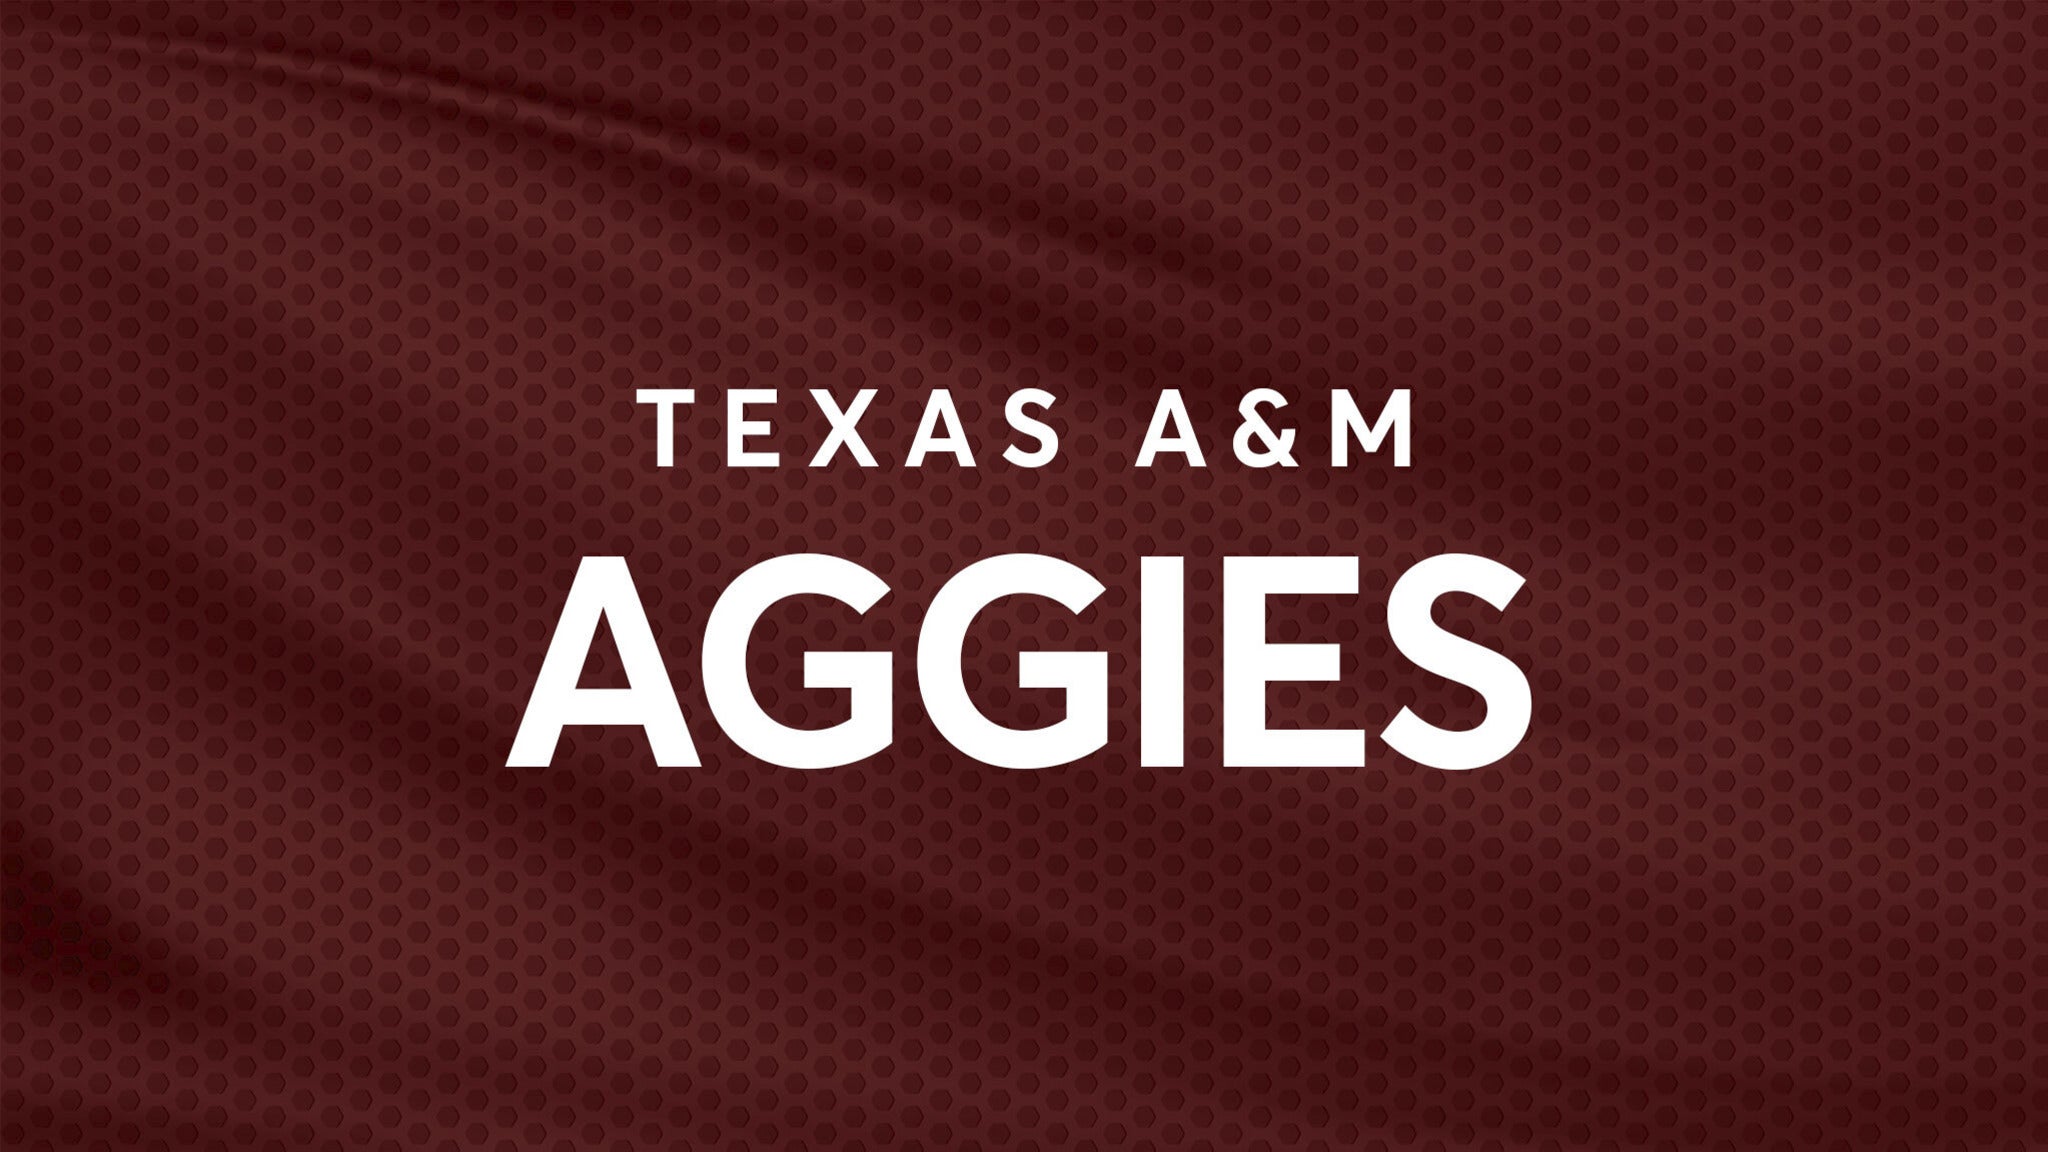 Texas A&M Aggies Football at Kyle Field